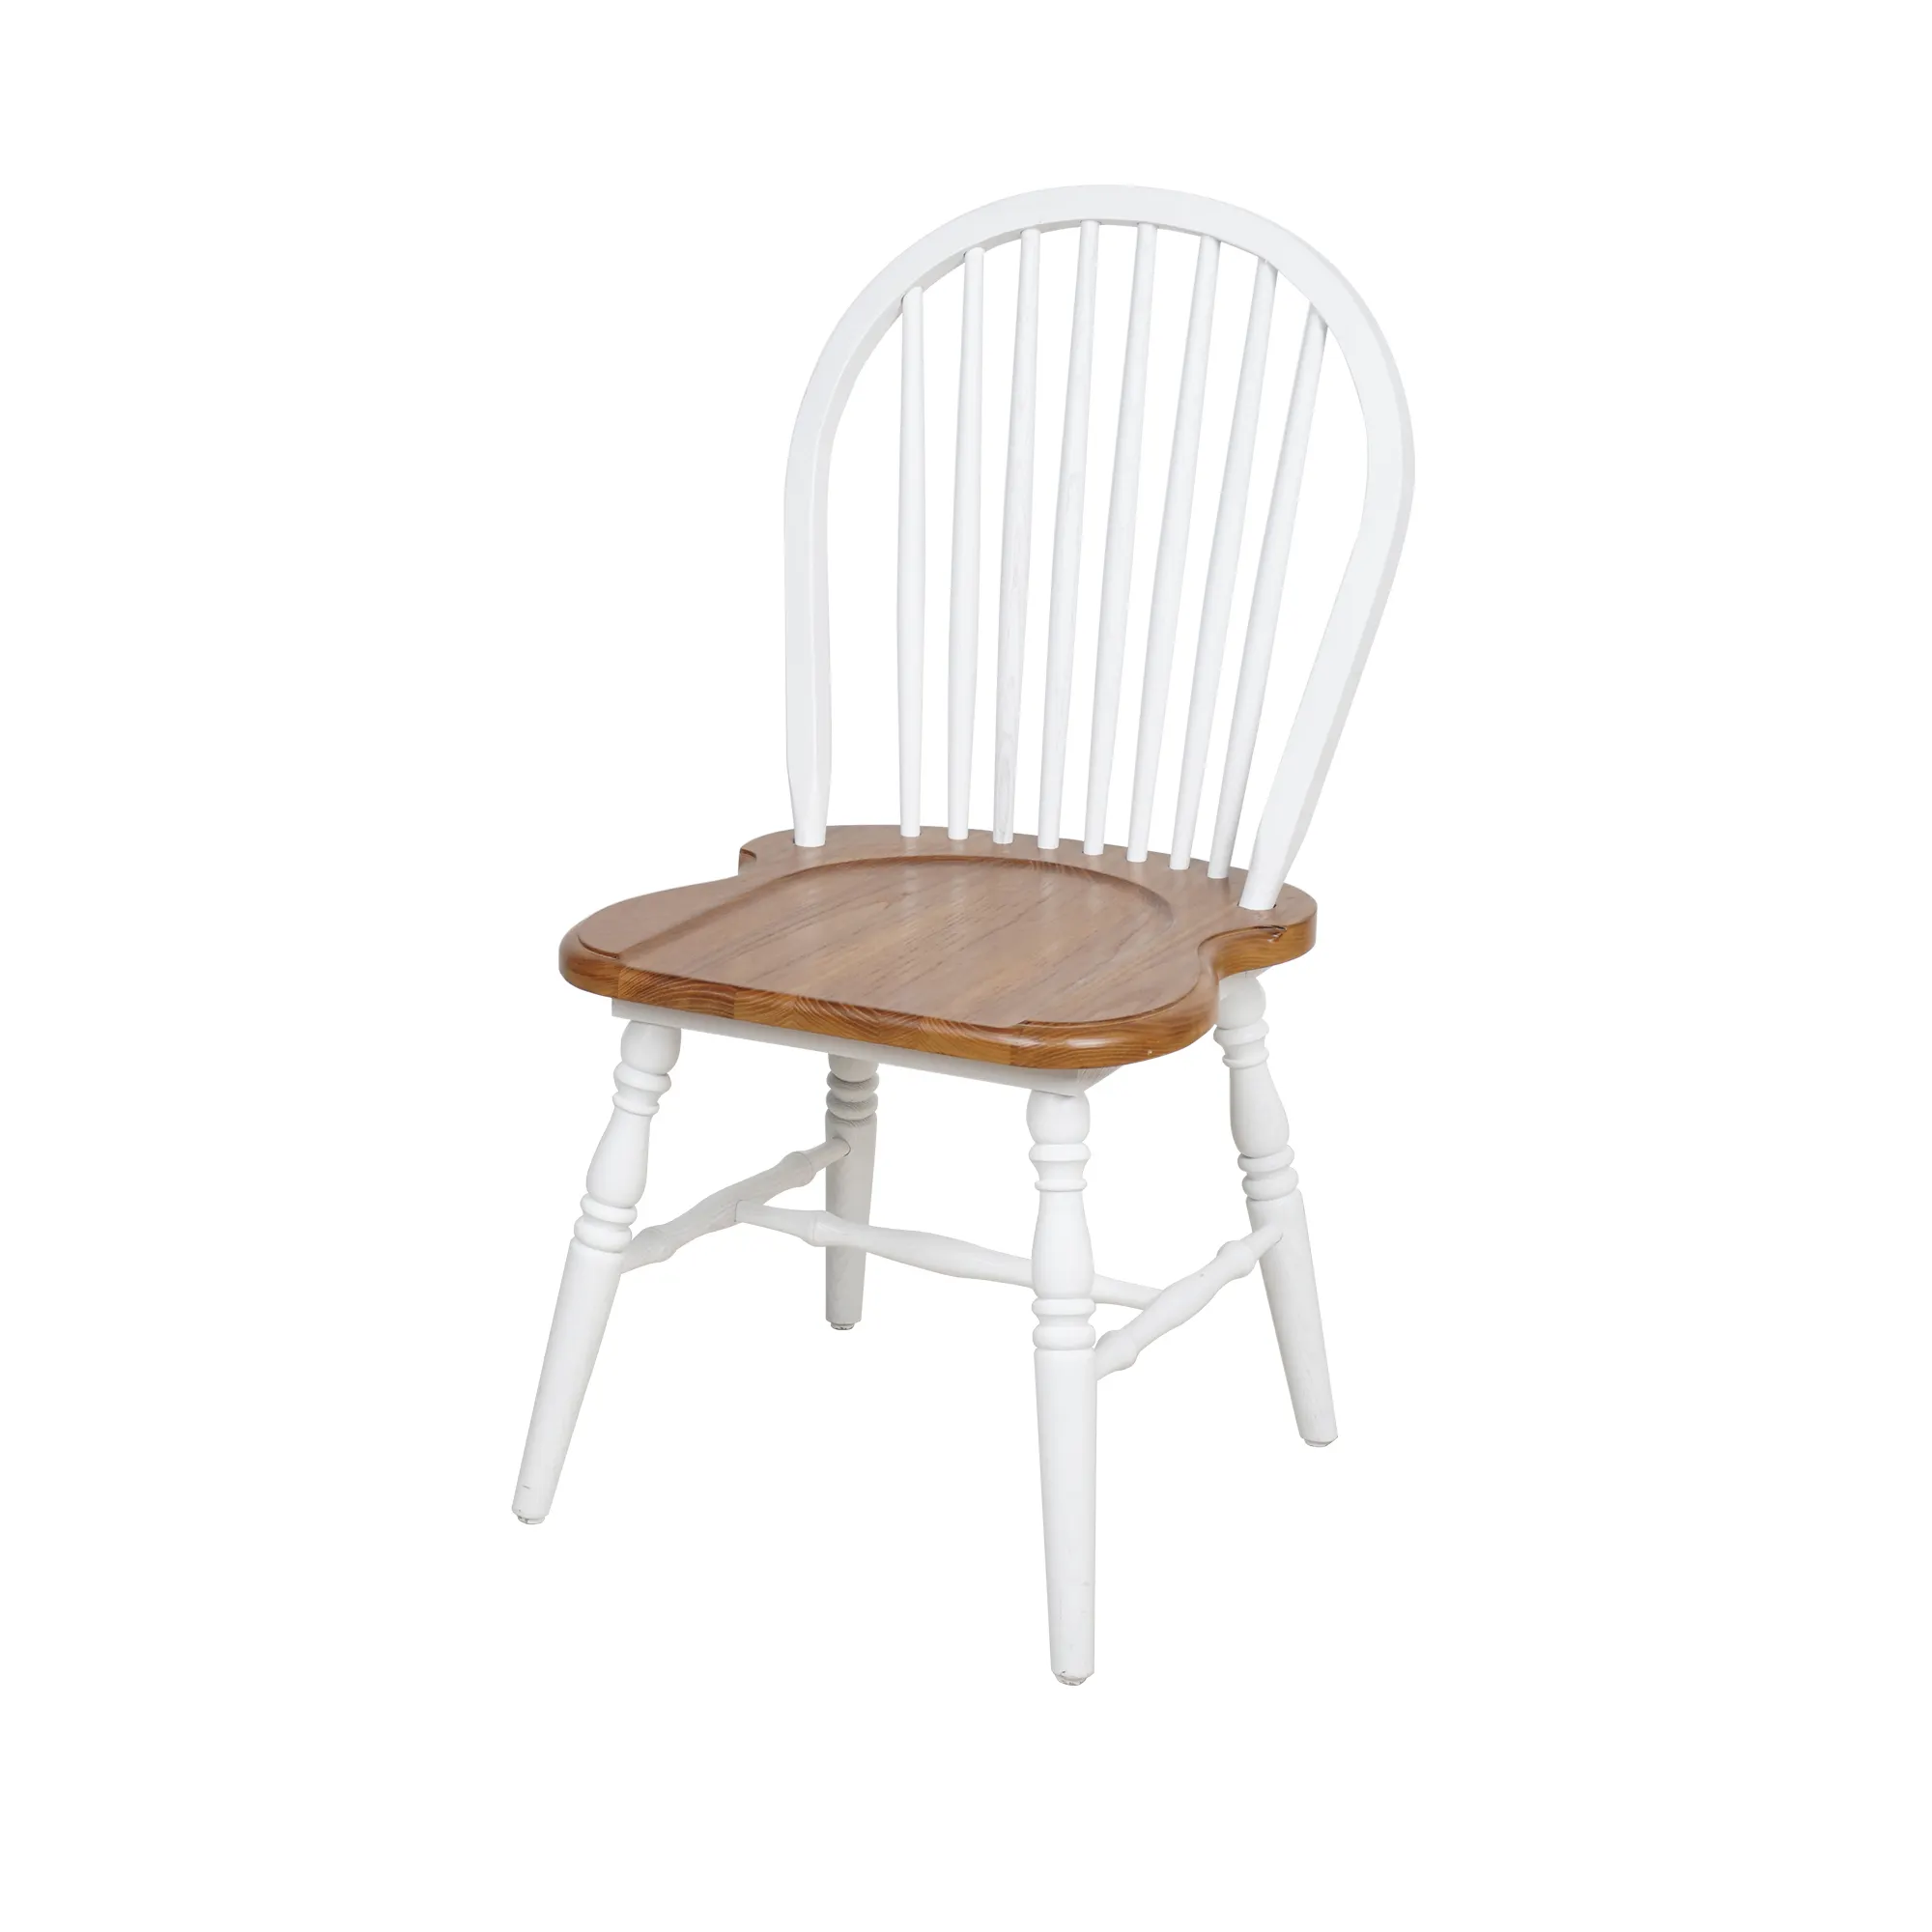 كرسي خشبي بتصميم بسيط كلاسيكي لمطعم أو فندق لغرفة الطعام يتميز بقمة الظهر